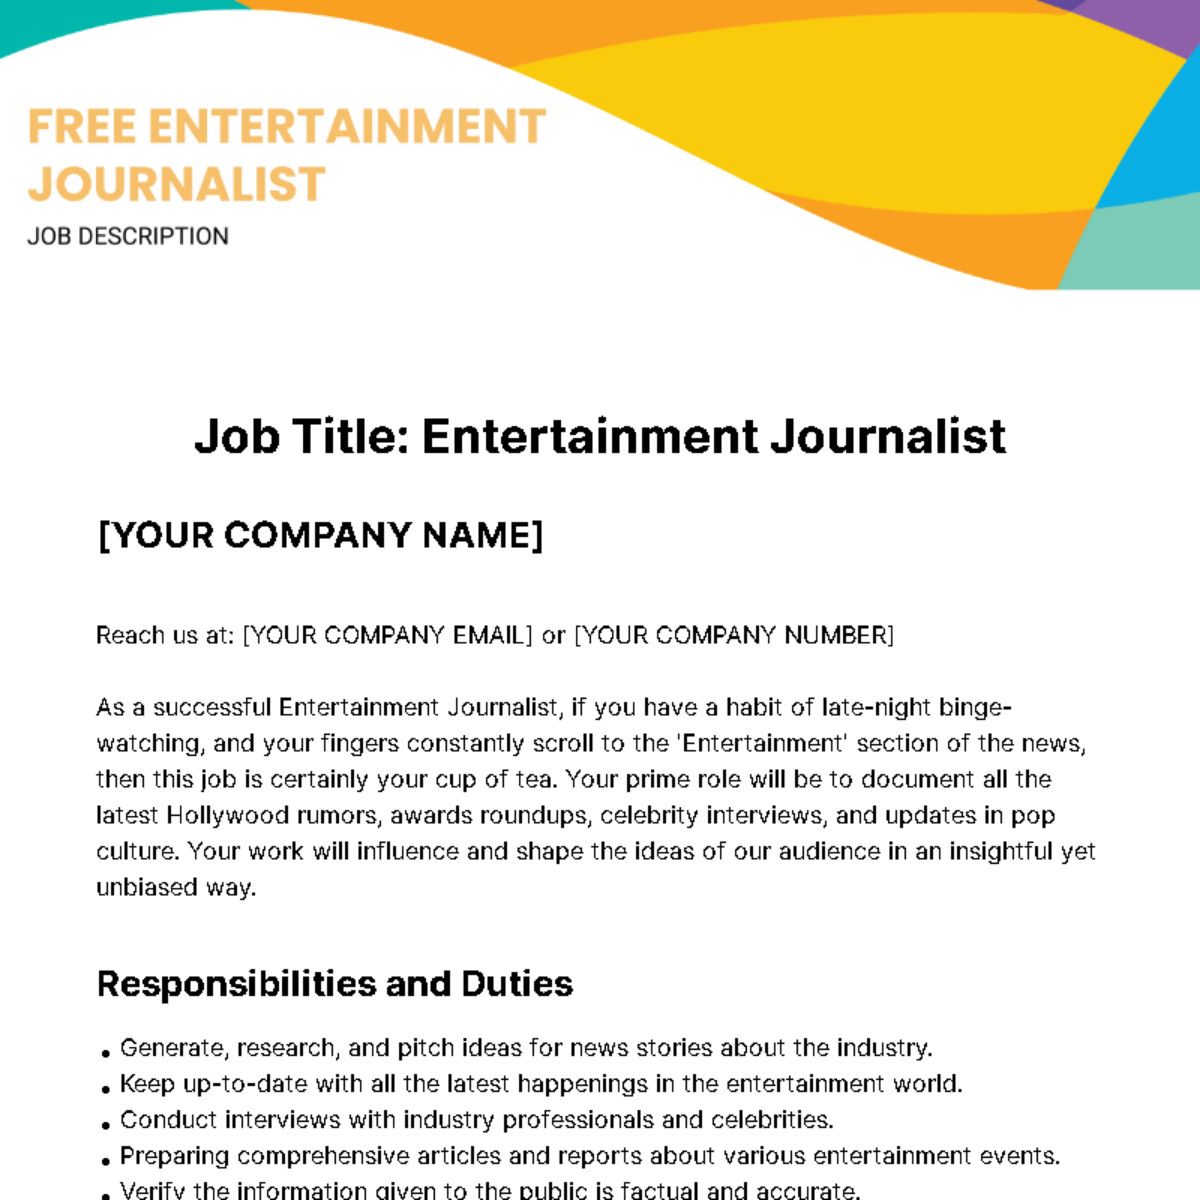 Free Entertainment Journalist Job Description Template